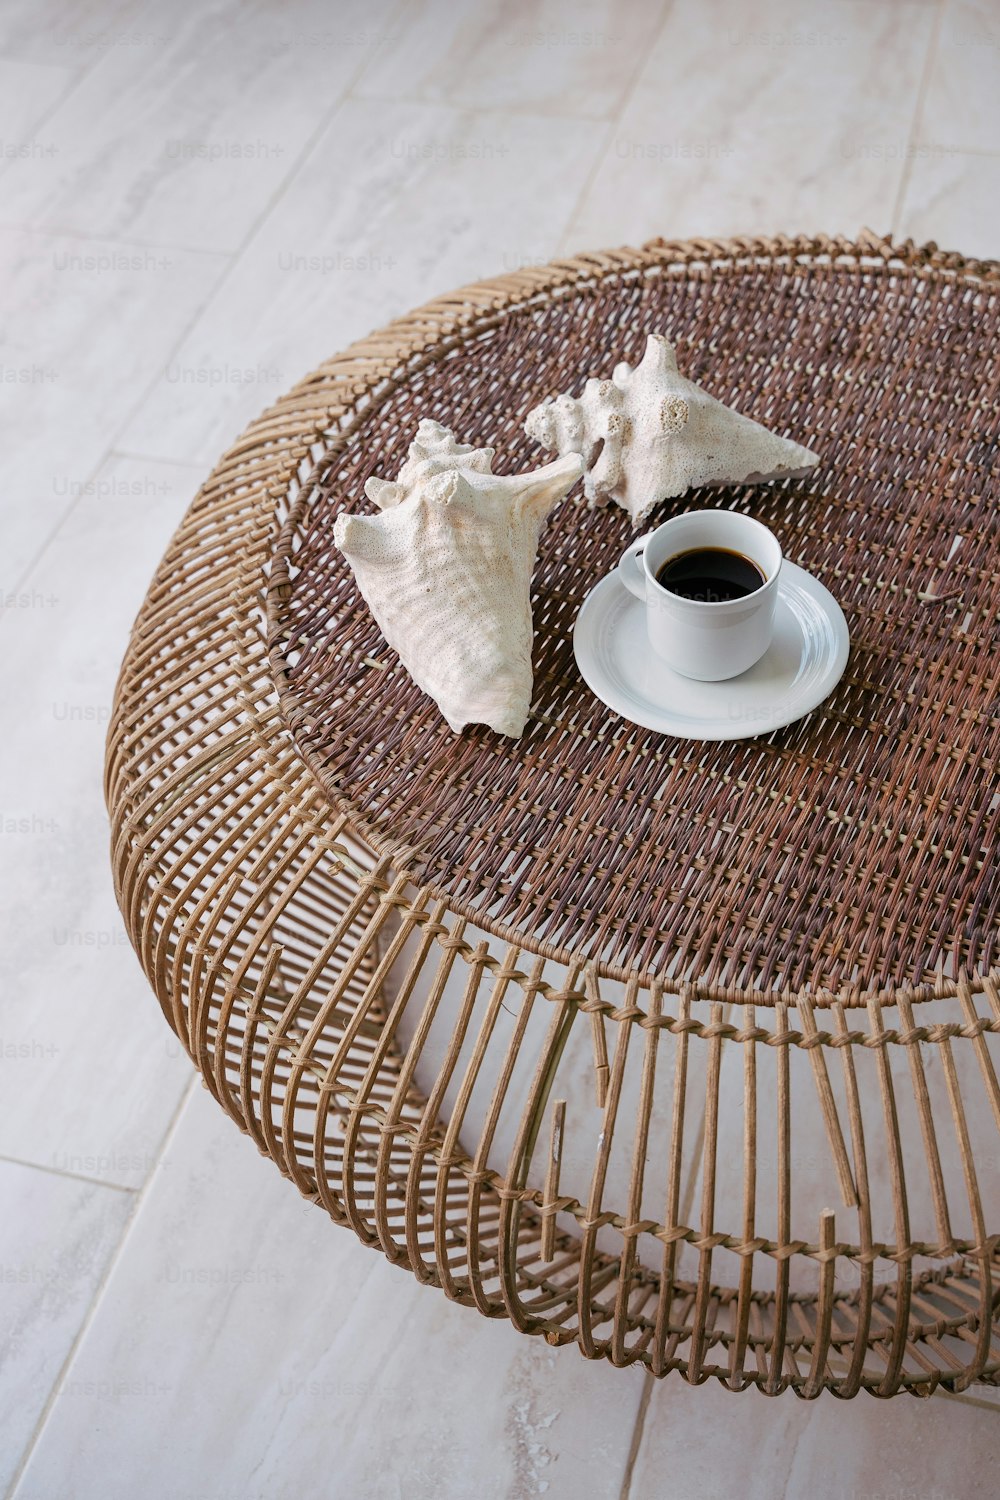 一杯のコーヒーと貝殻が乗った籐のテーブル